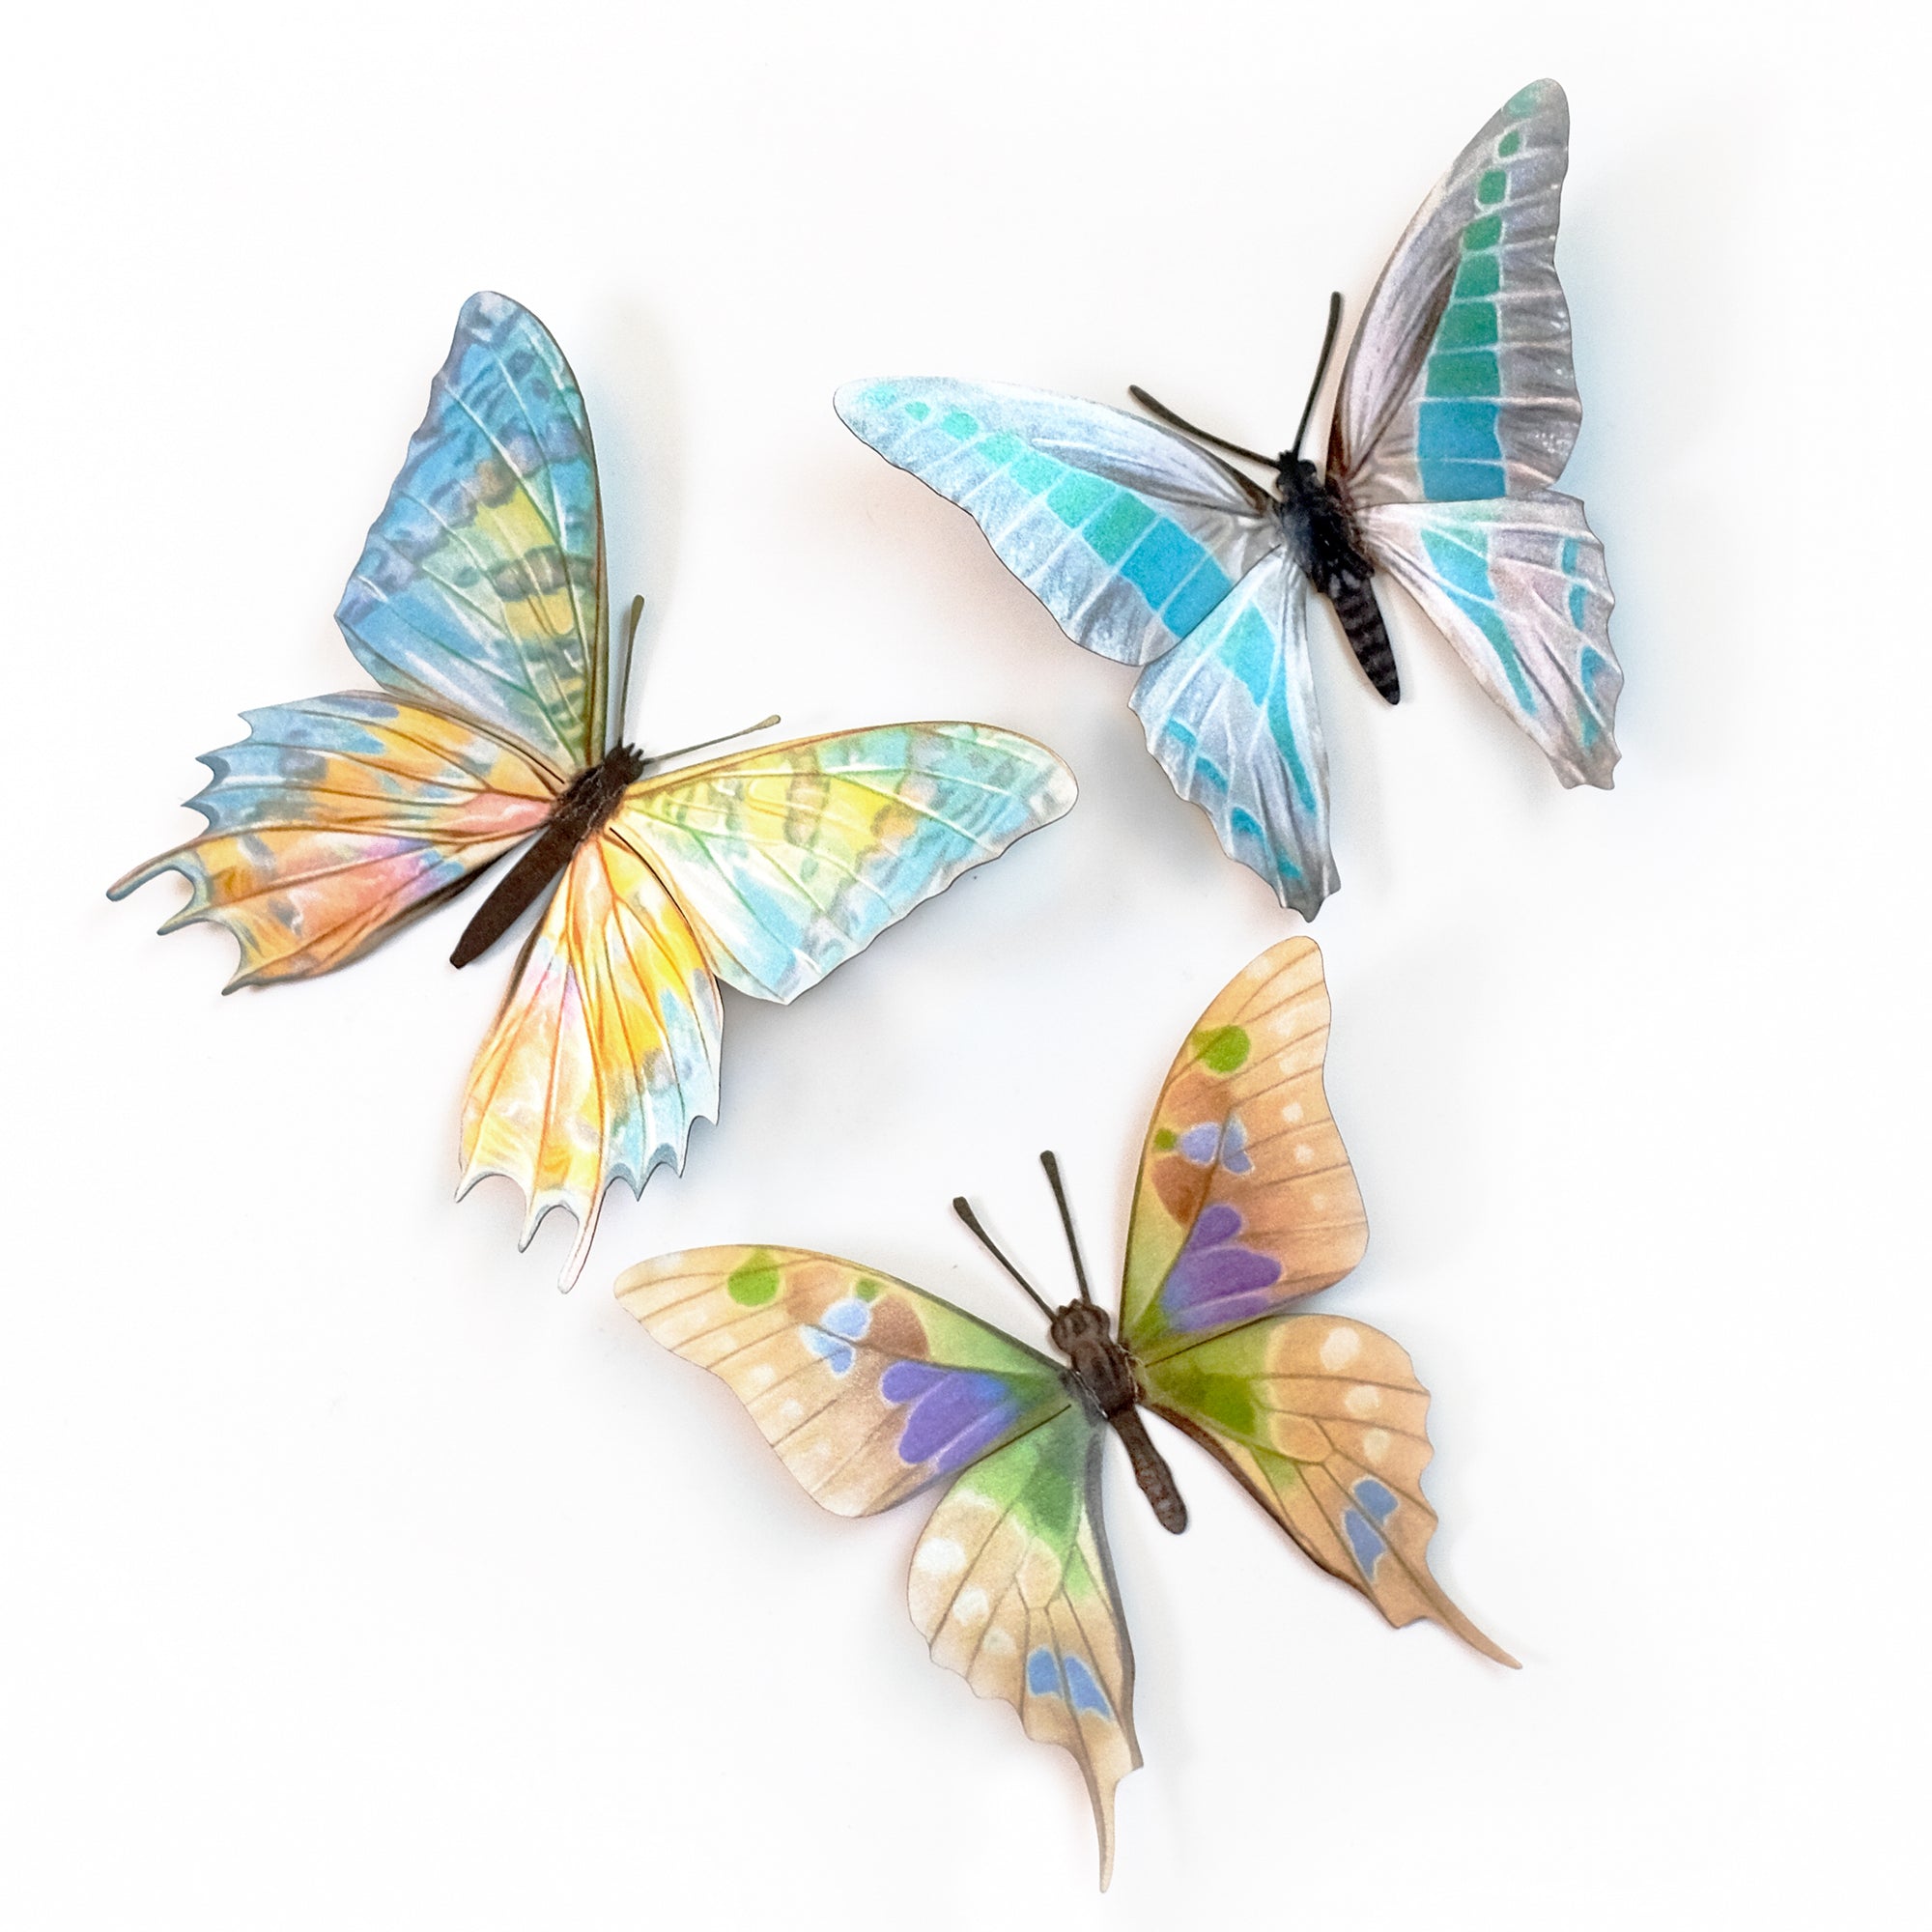 “Moon Glimmer” Butterfly Set Artist Wholesale